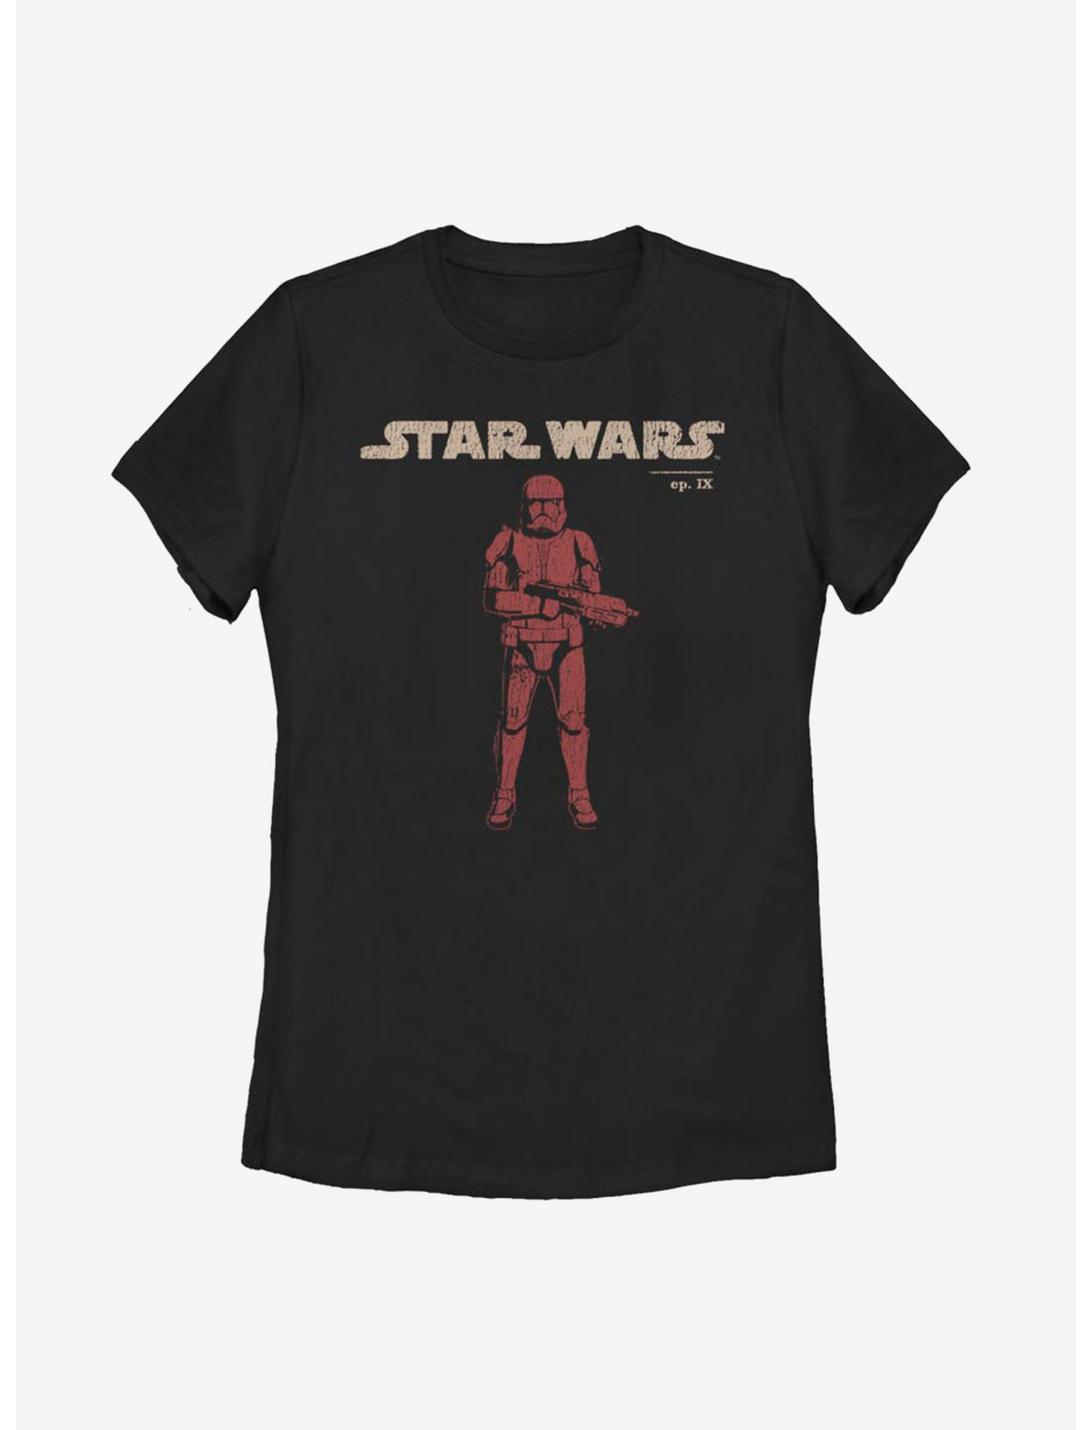 Star Wars Episode IX The Rise Of Skywalker Vigilant Womens T-Shirt, BLACK, hi-res